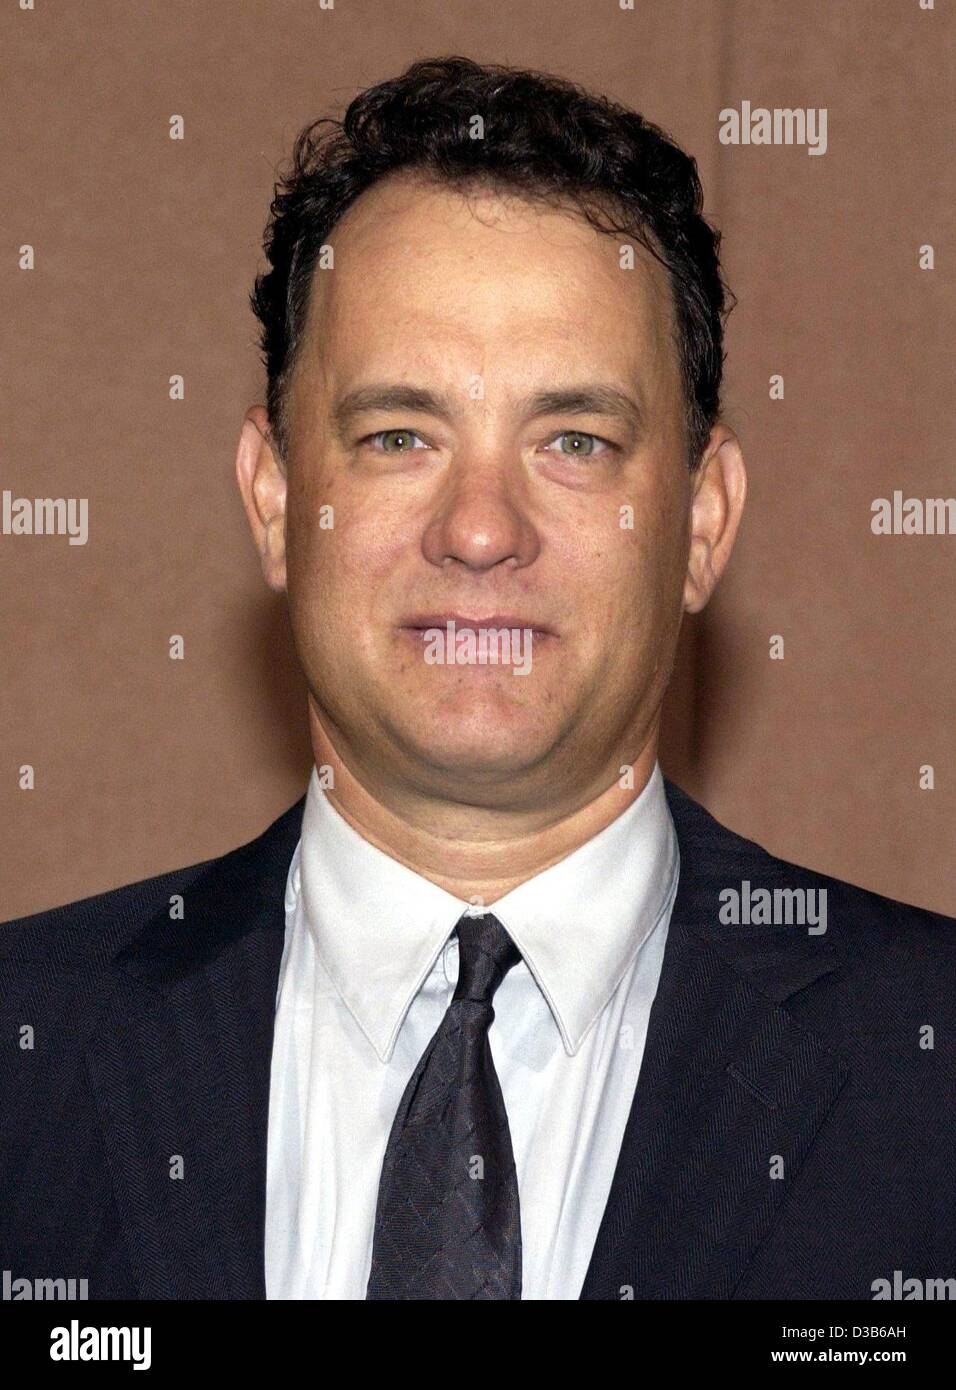 (Afp) - L'acteur américain Tom Hanks, photographié au cours de la présentation de son nouveau film 'Road to Perdition' à Berlin, Allemagne, 29 août 2002. Dans le film de gangsters 46 ans Hanks agit comme un père qui travaille comme killer à l'appui de sa famille. Banque D'Images